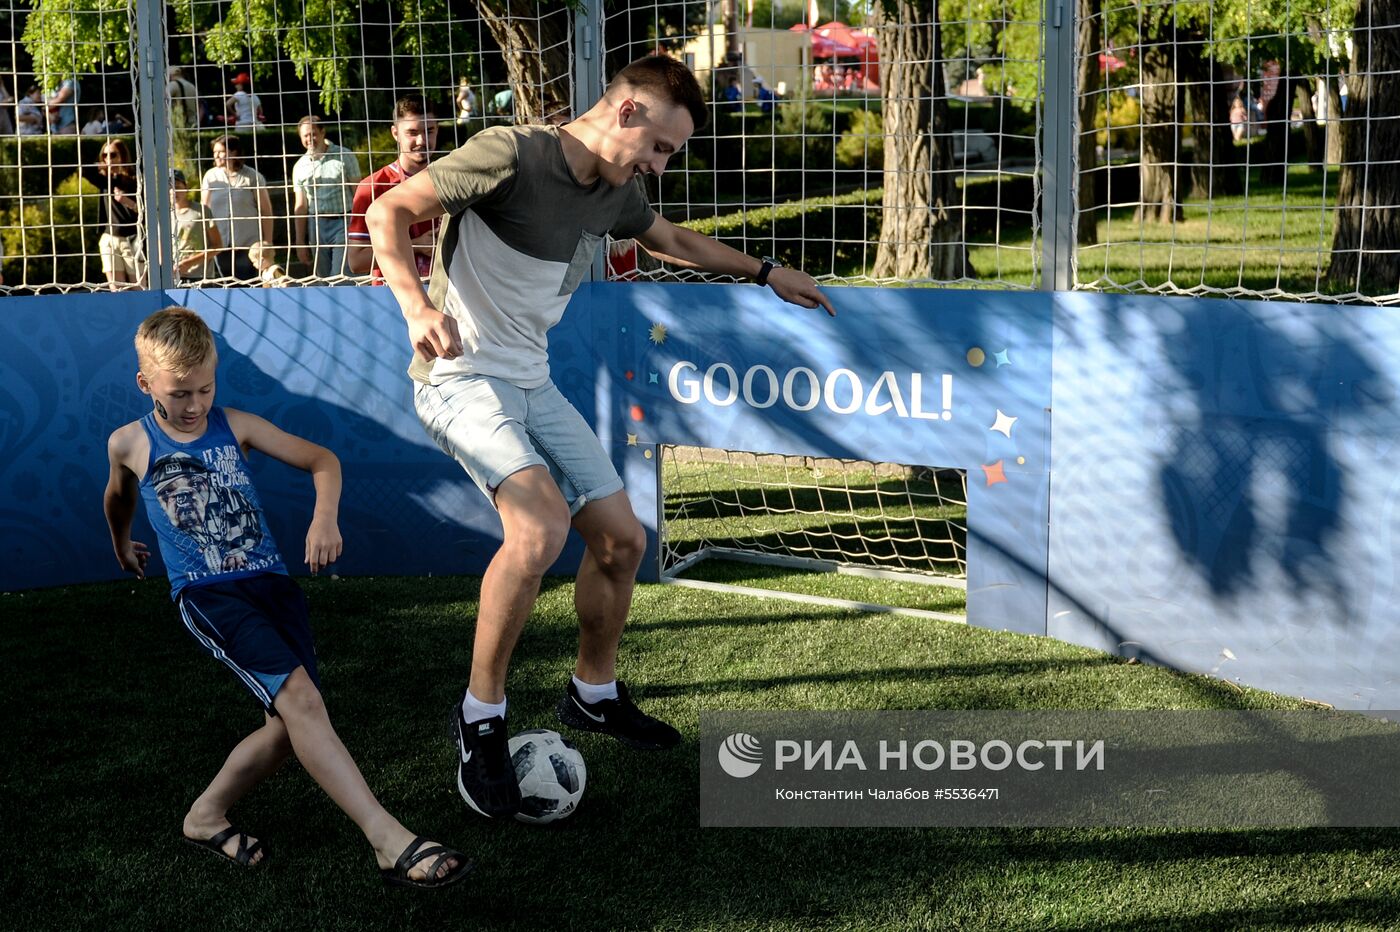 Подготовка Волгограда к ЧМ-2018 по футболу